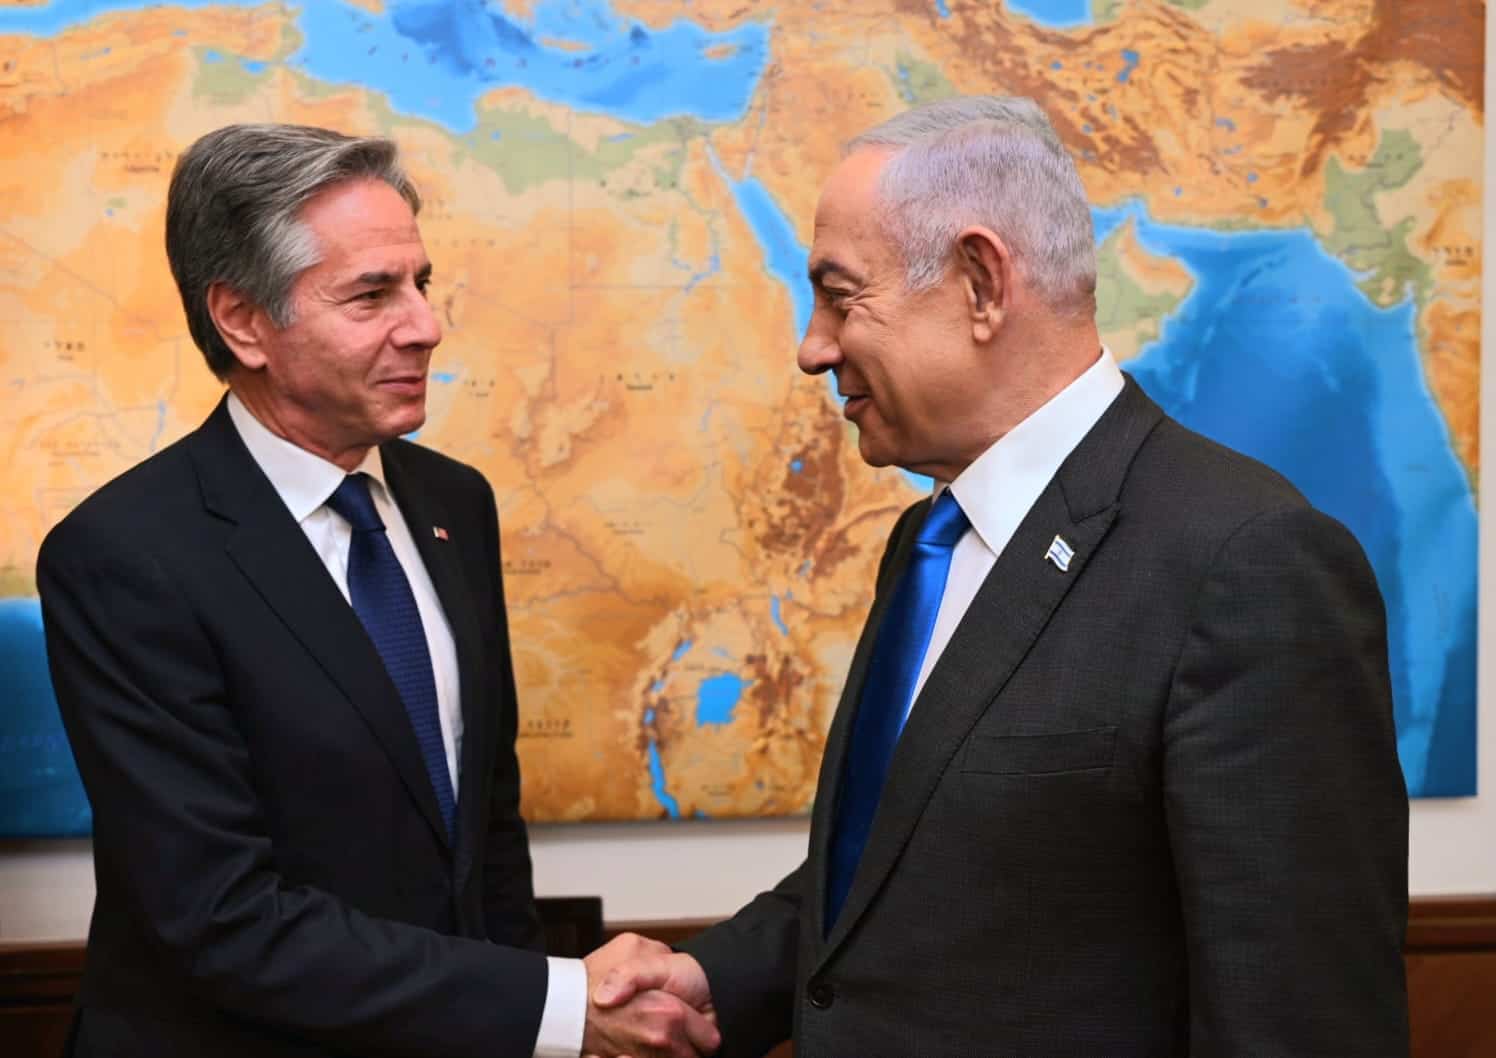 Blinken, Netanyahu meet amid push for hostage deal